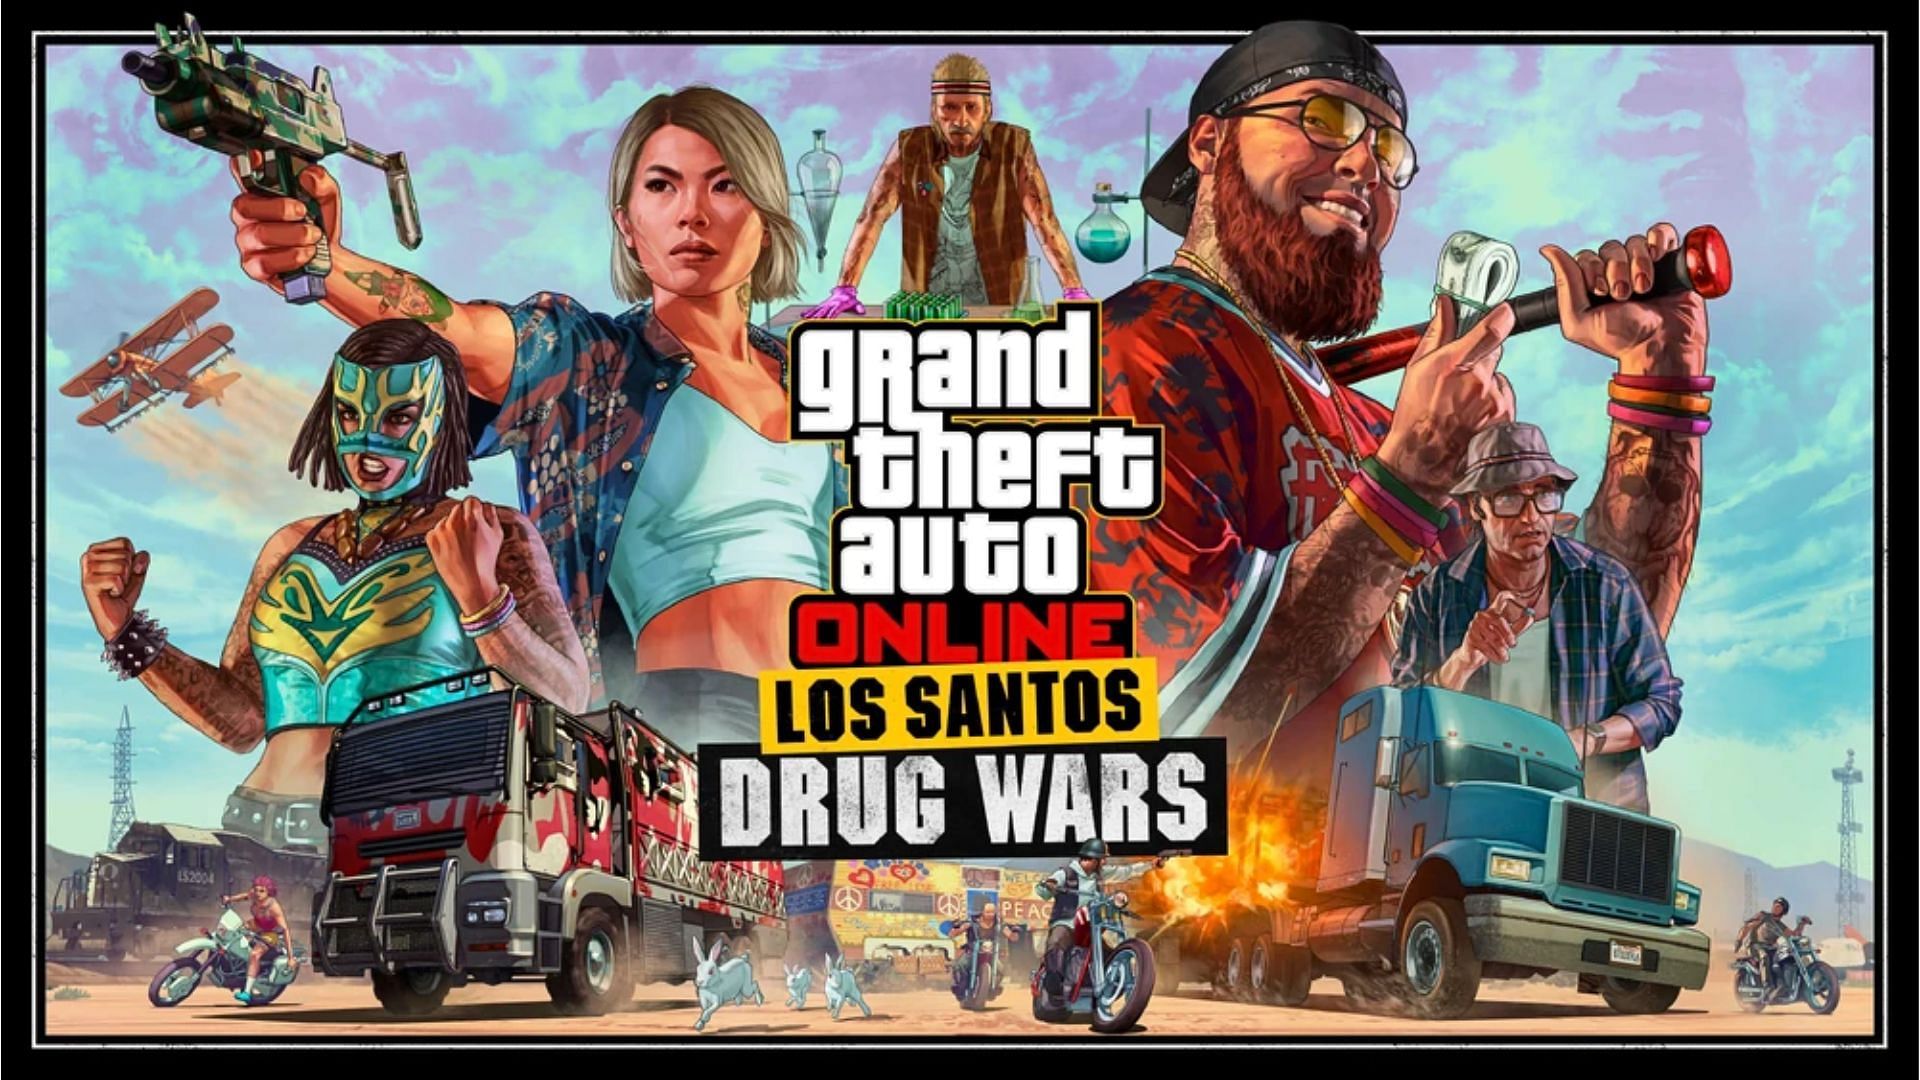 Five best Los Santos Drug Wars missions to try in GTA Online (Image via Rockstar Games)